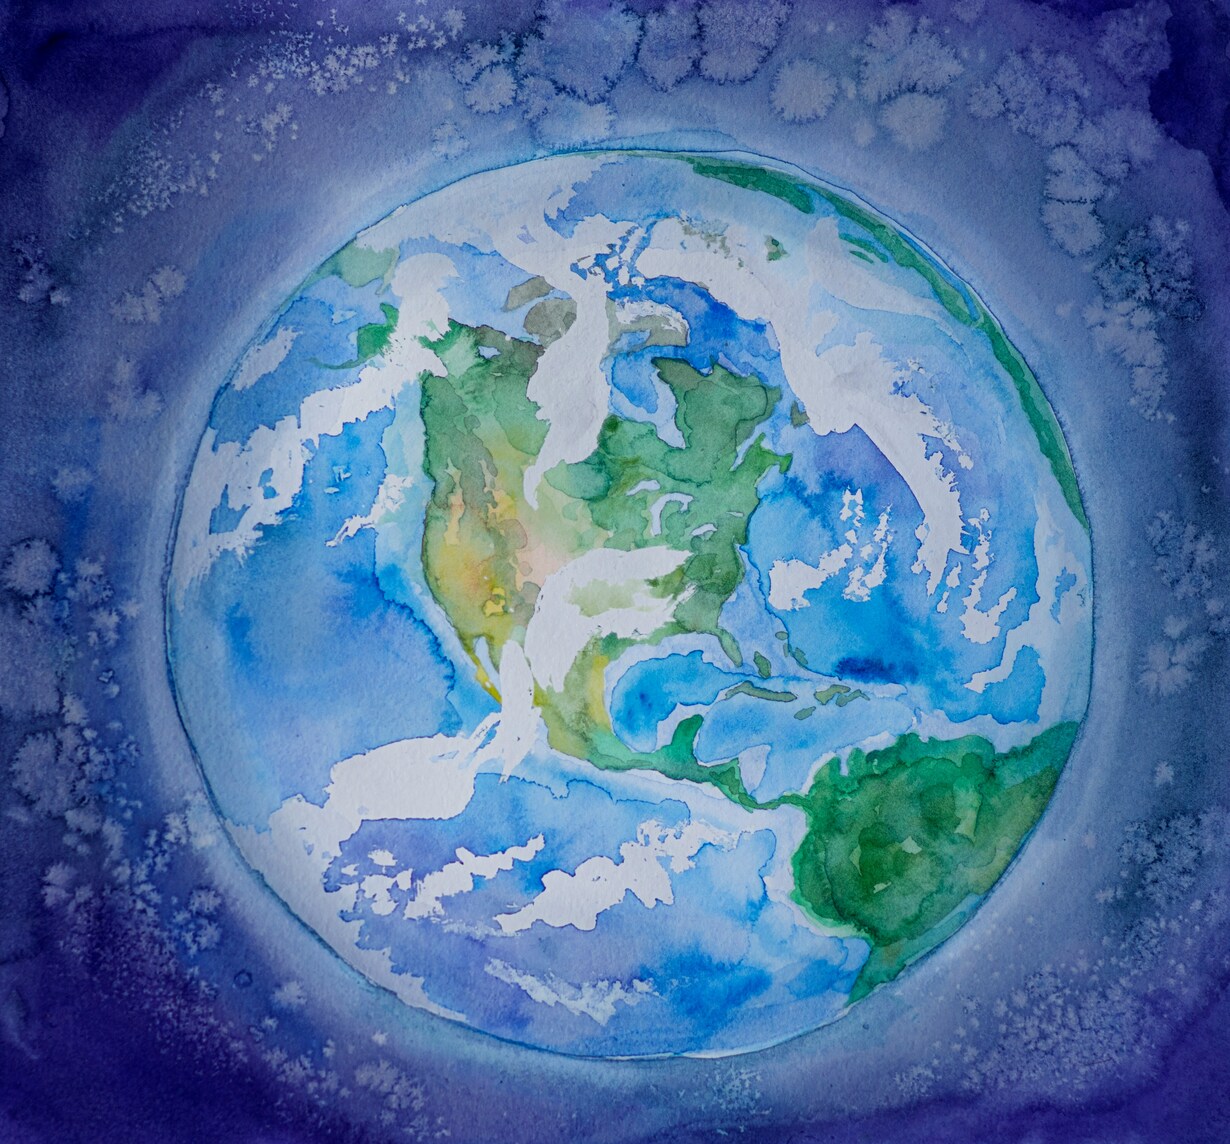 Ein Aquarellgemälde zeigt die Erde vom All aus gesehen